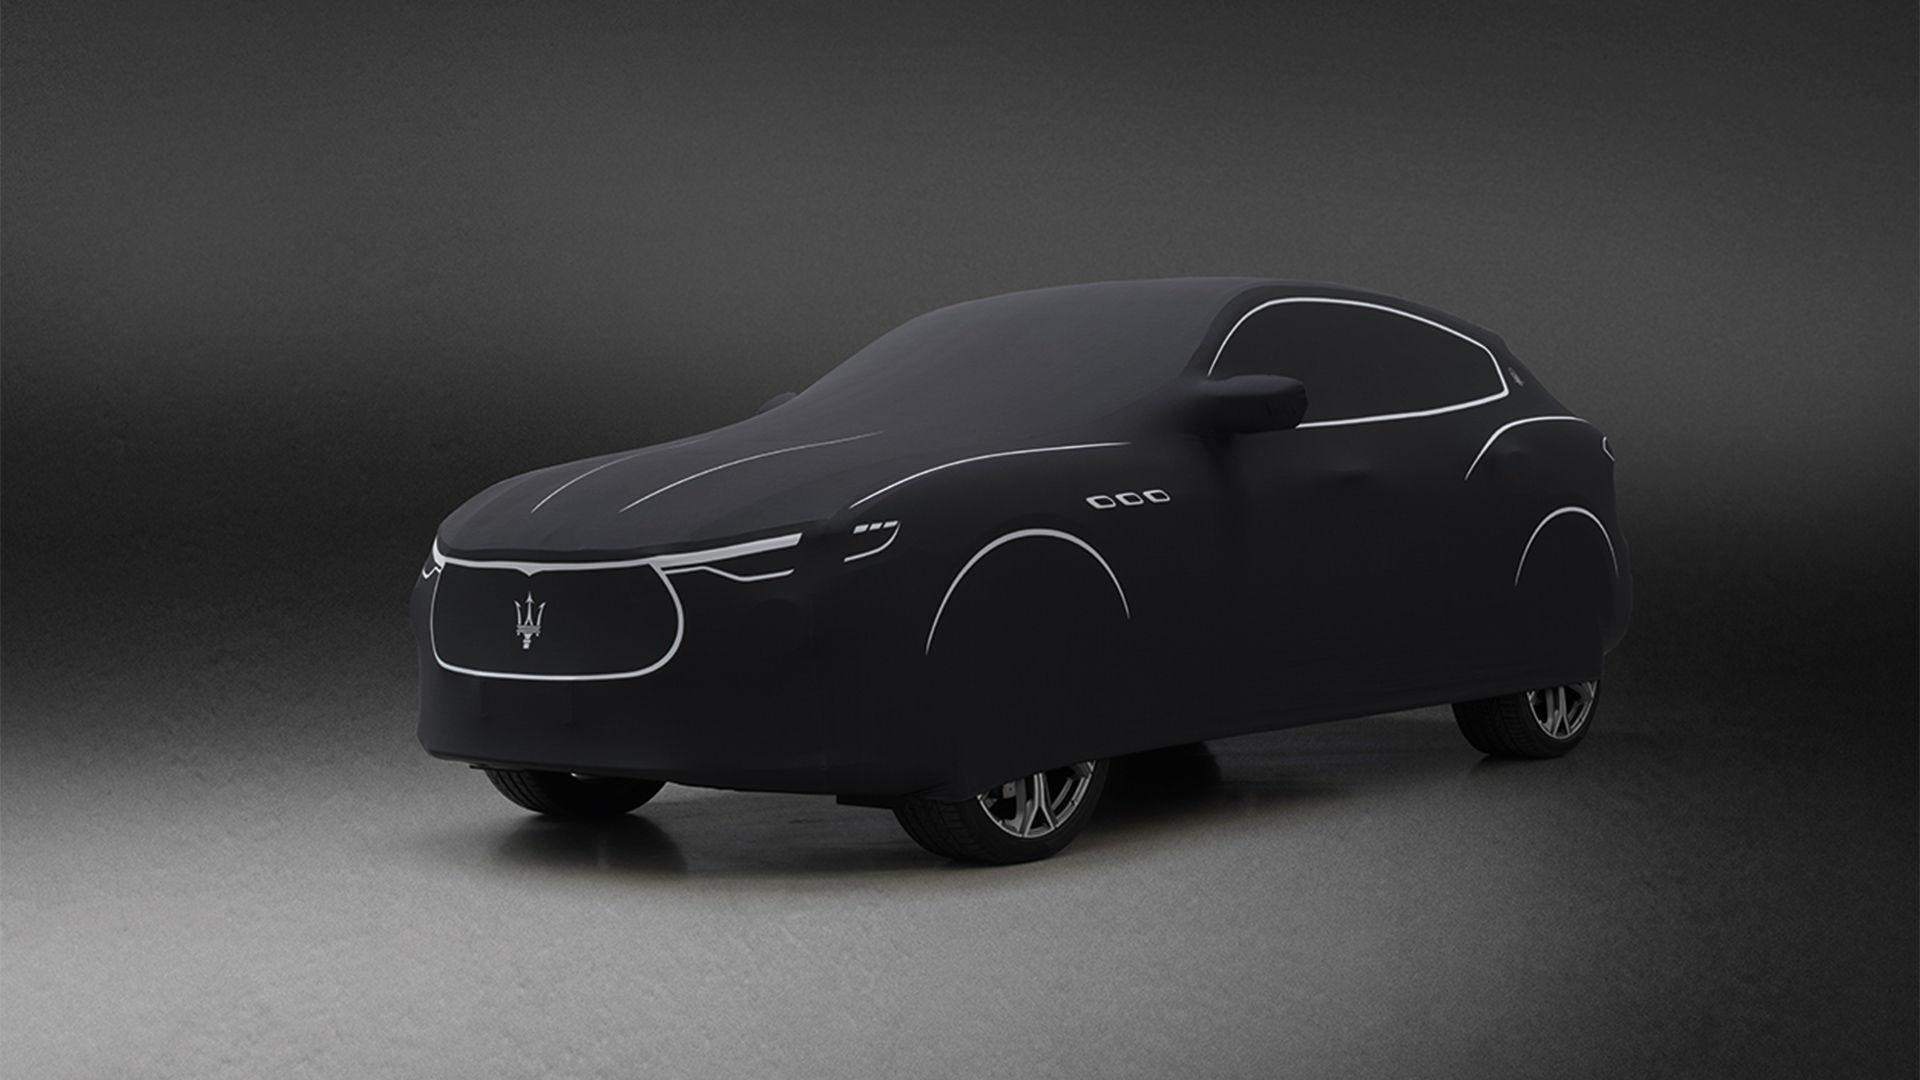 Funda protectora negra de Zegna para Maserati Levante